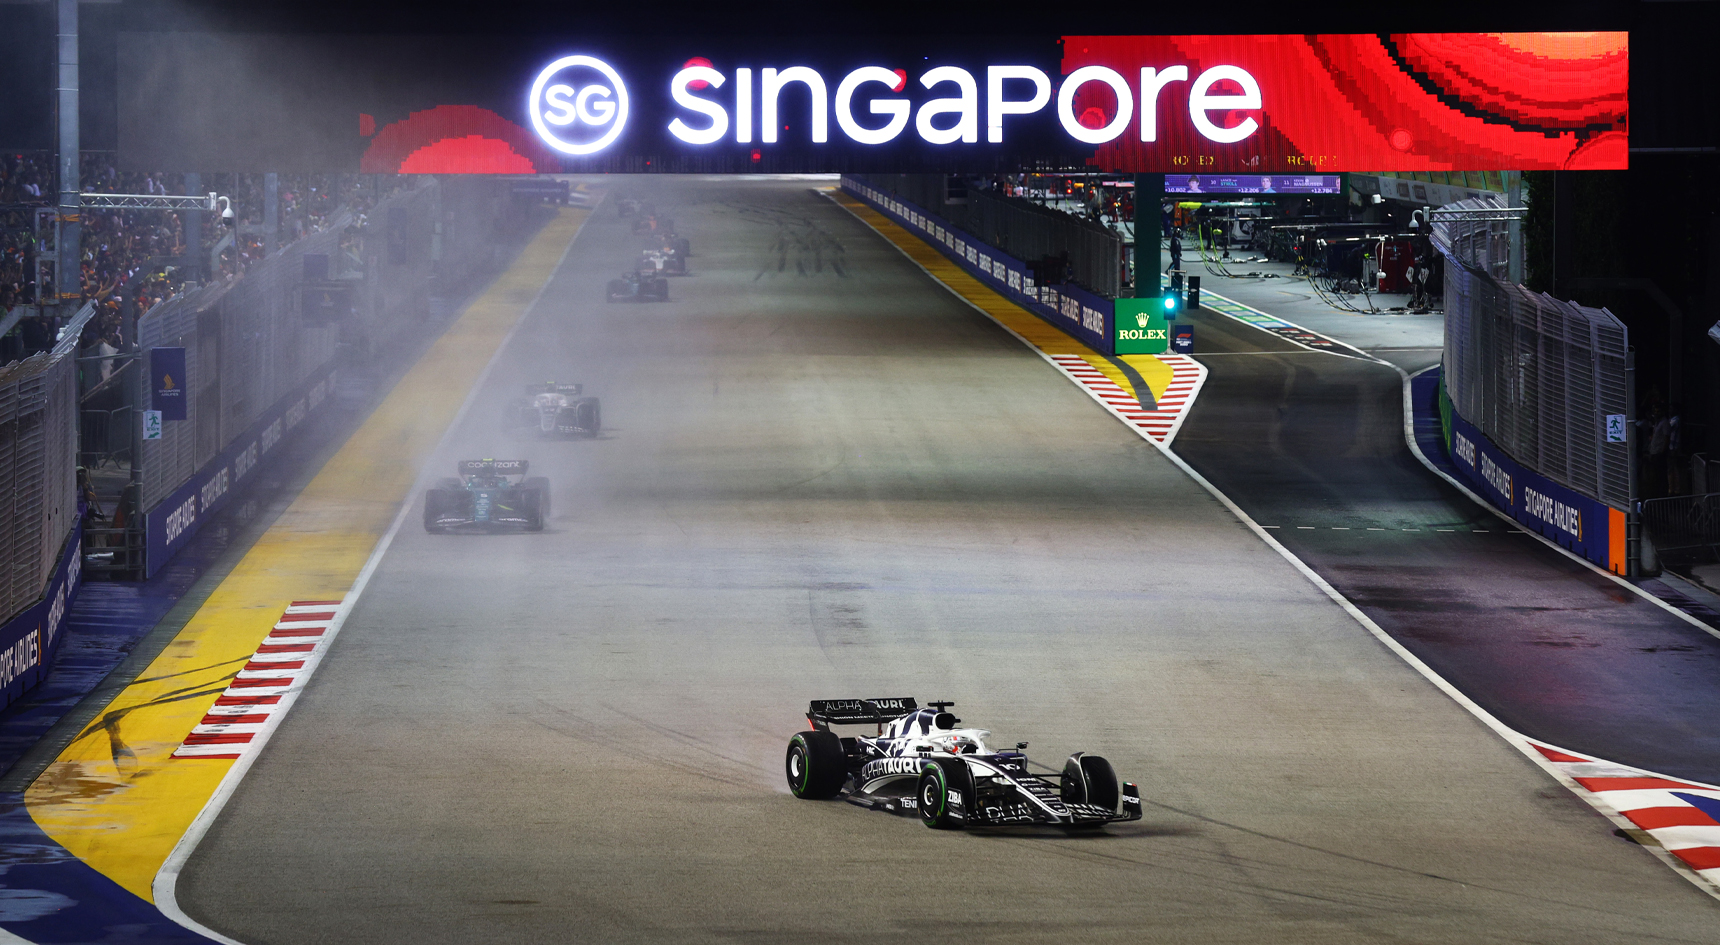 Singapore Formula 1 Grand Prix